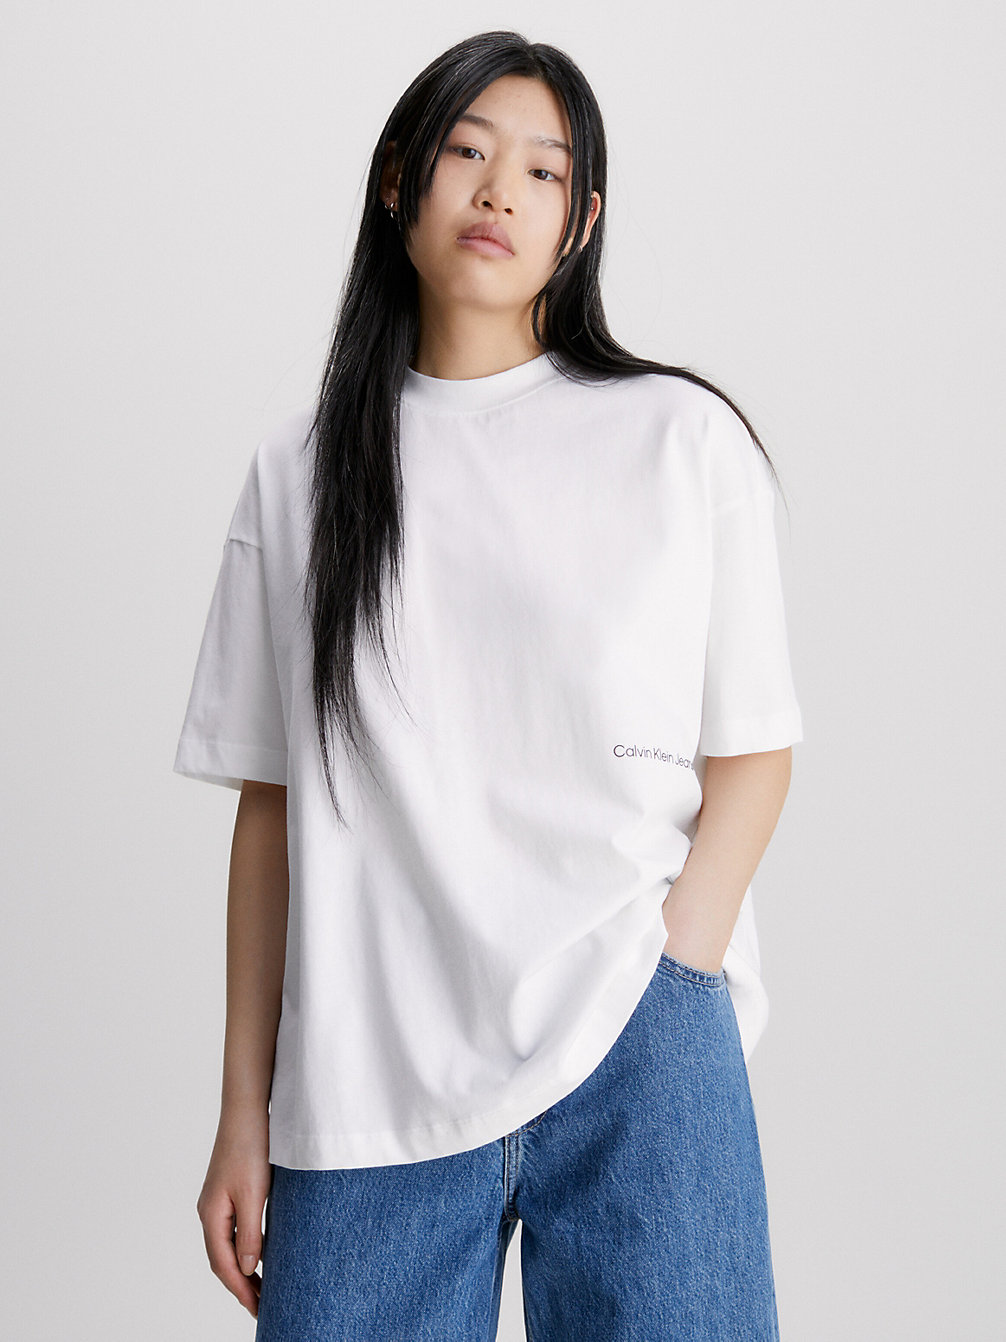 BRIGHT WHITE > Swobodny T-Shirt Z Nadrukiem Ze Zdjęcia > undefined Kobiety - Calvin Klein